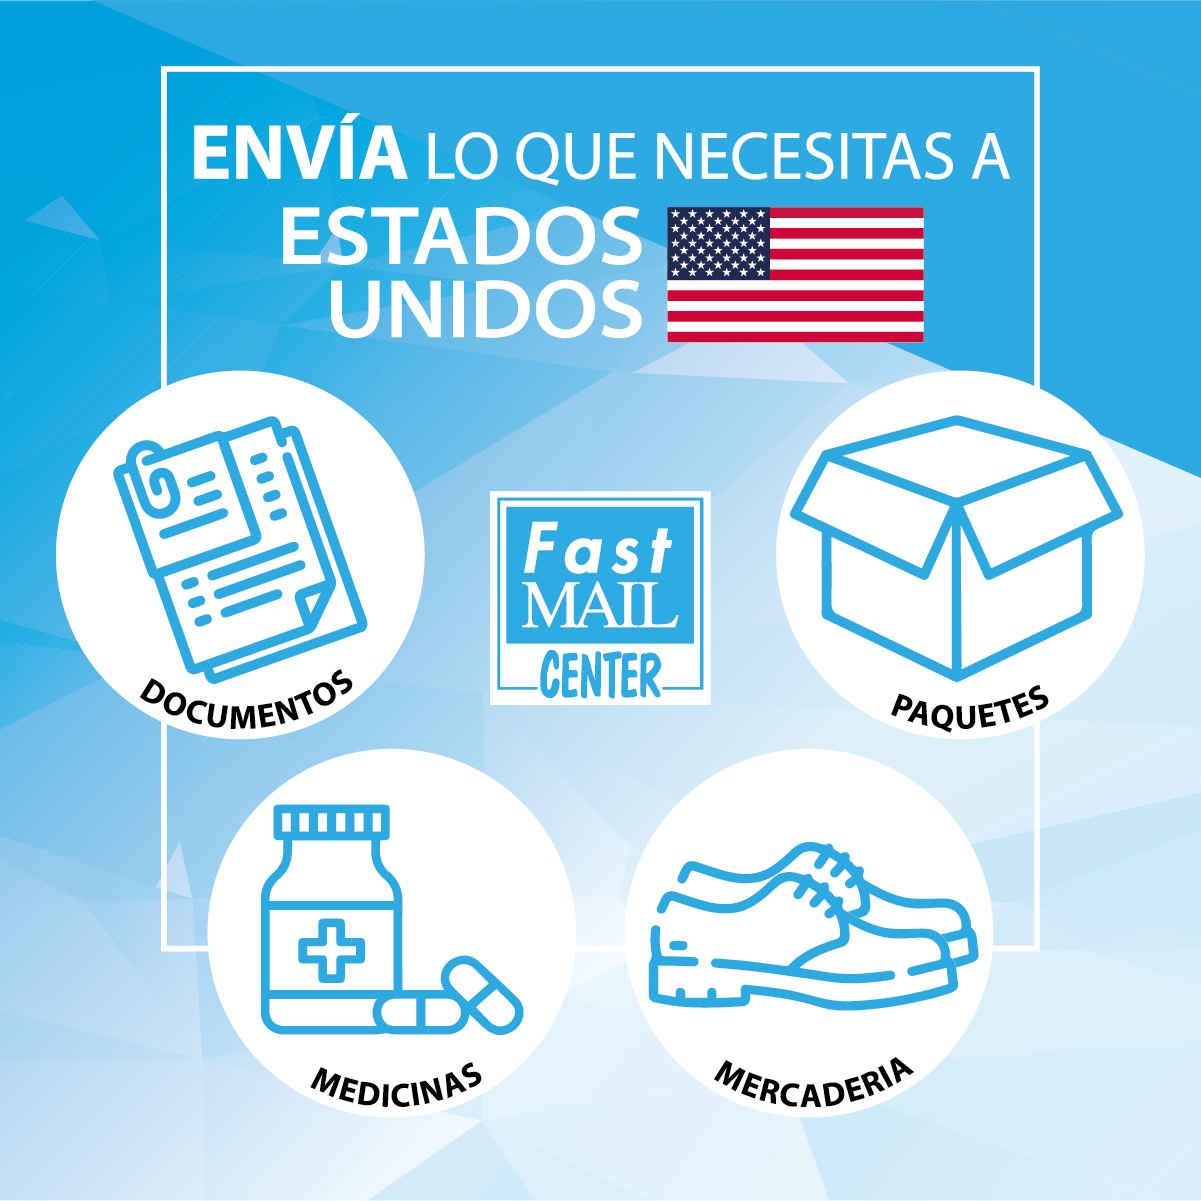 Envíos a Estados Unidos Fast Mail Center